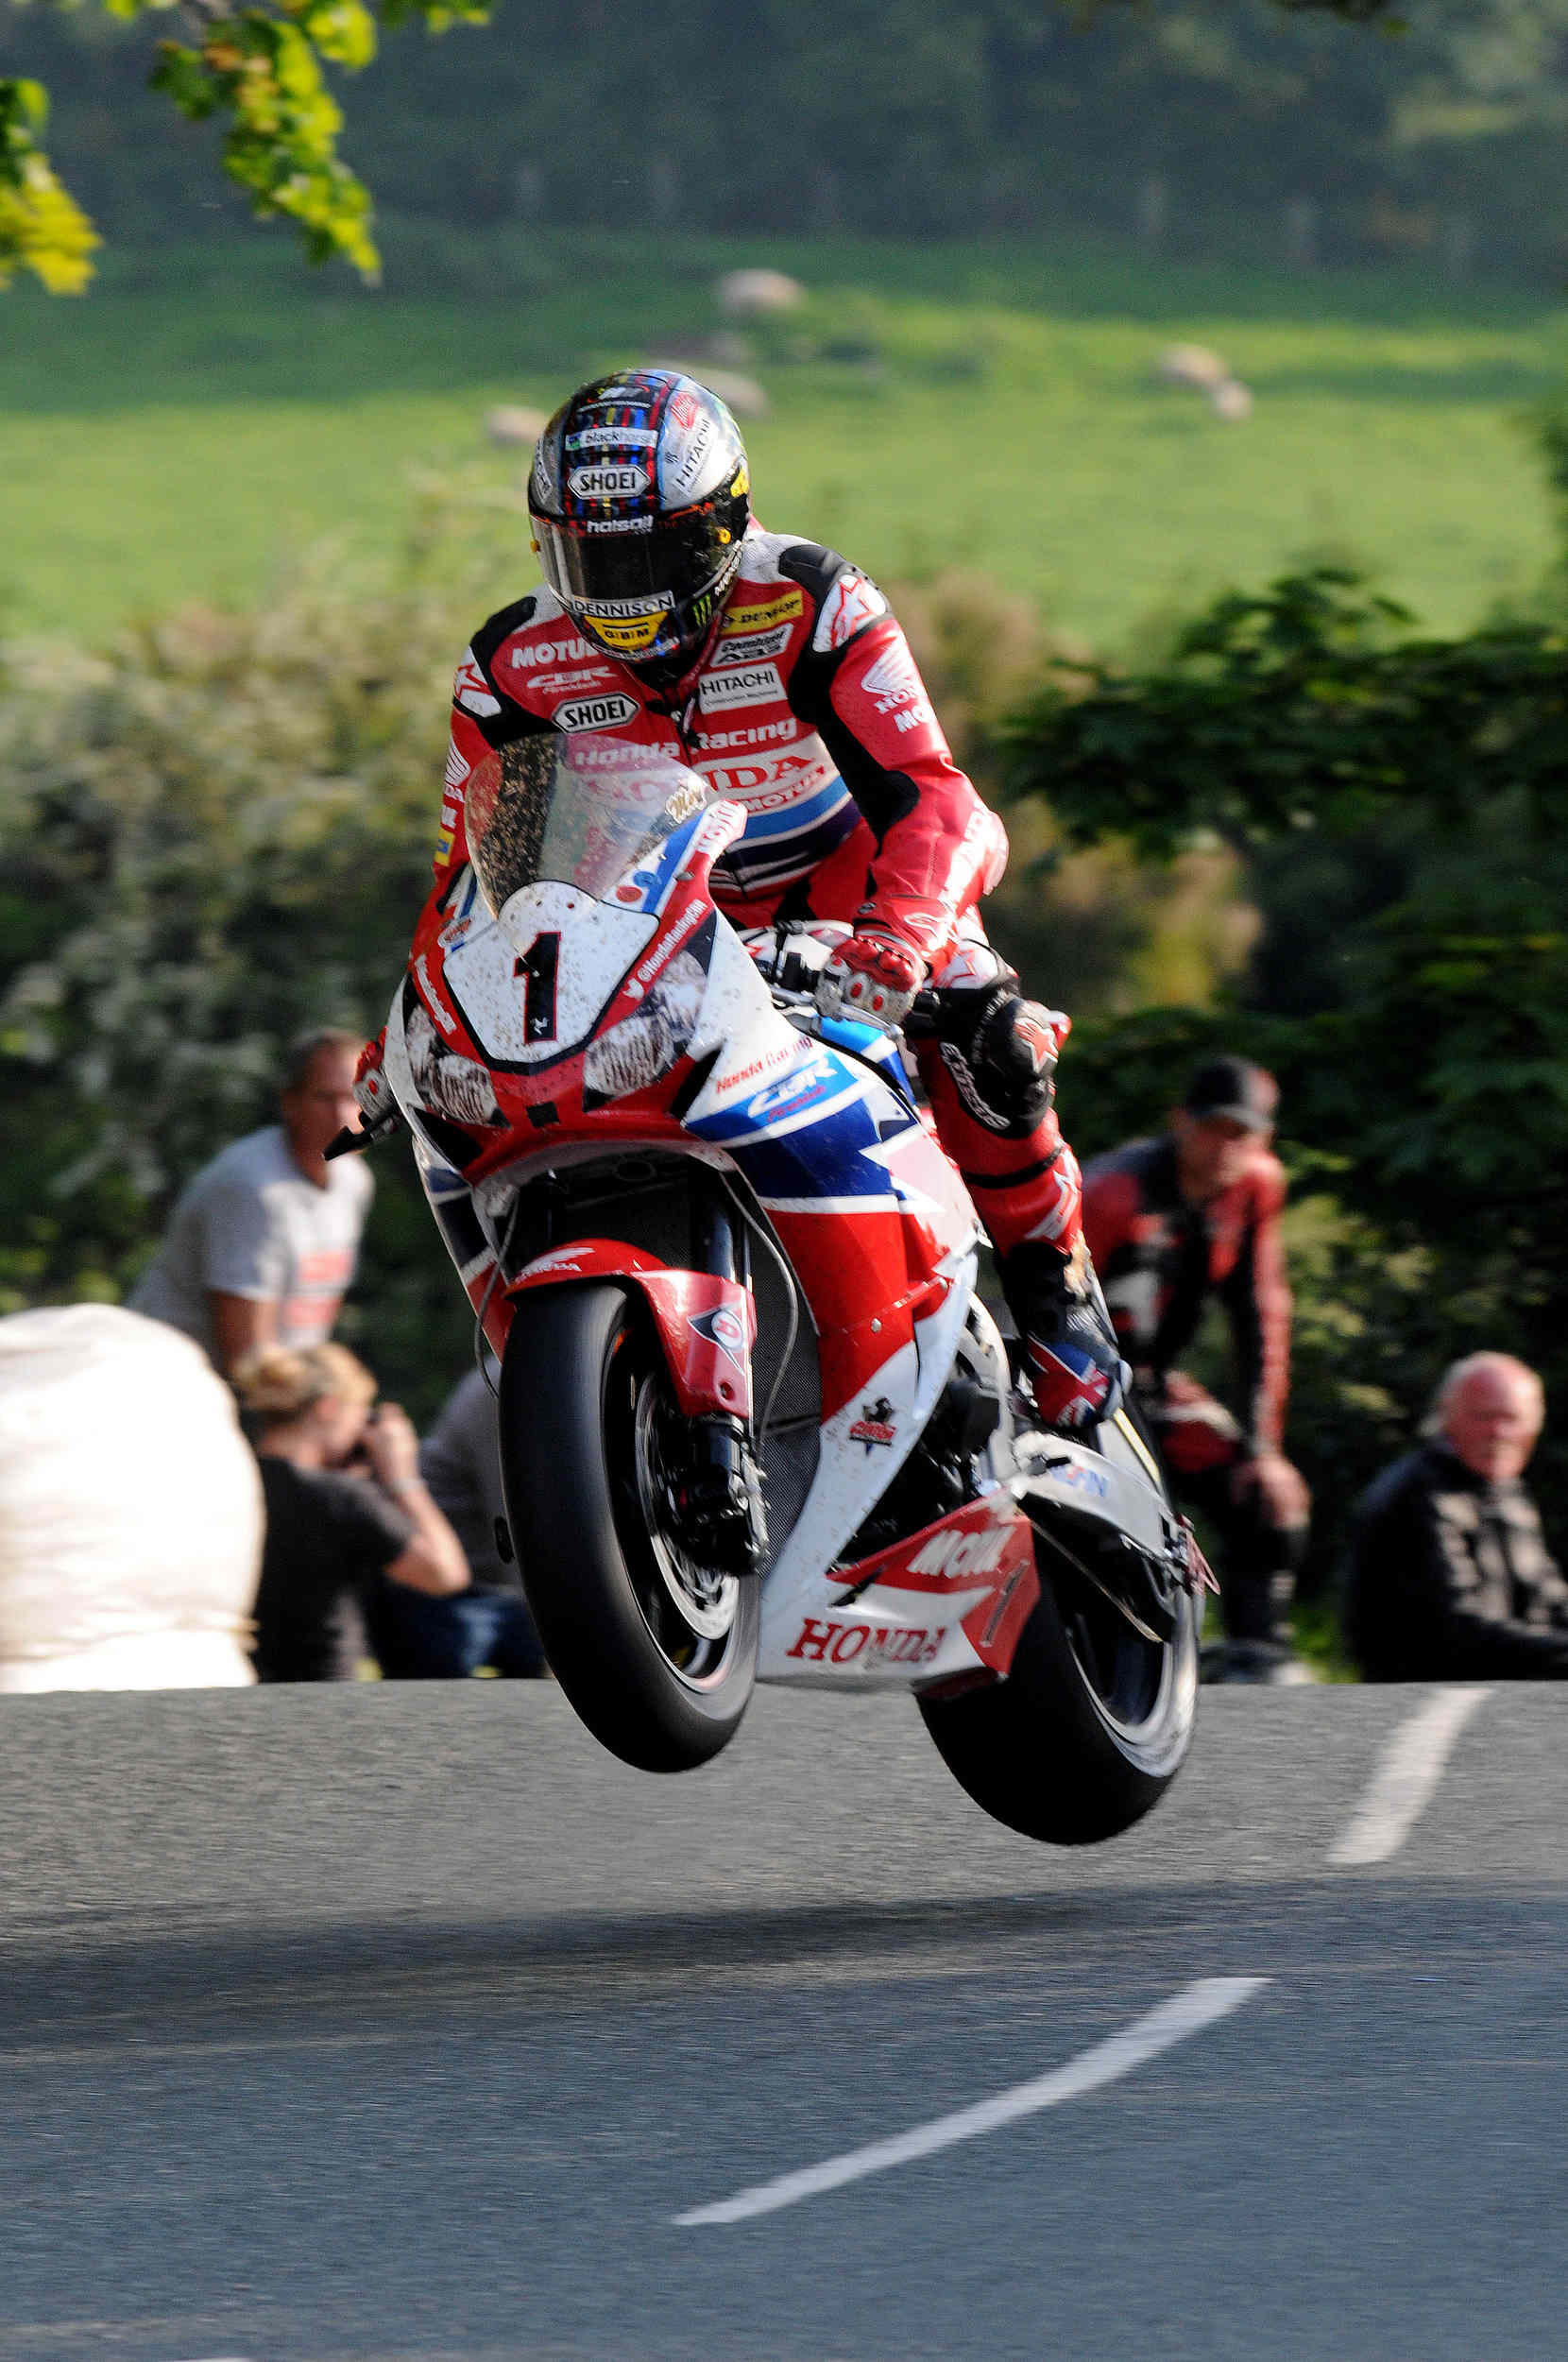  TT 2014 qualifying - John McGuinness 